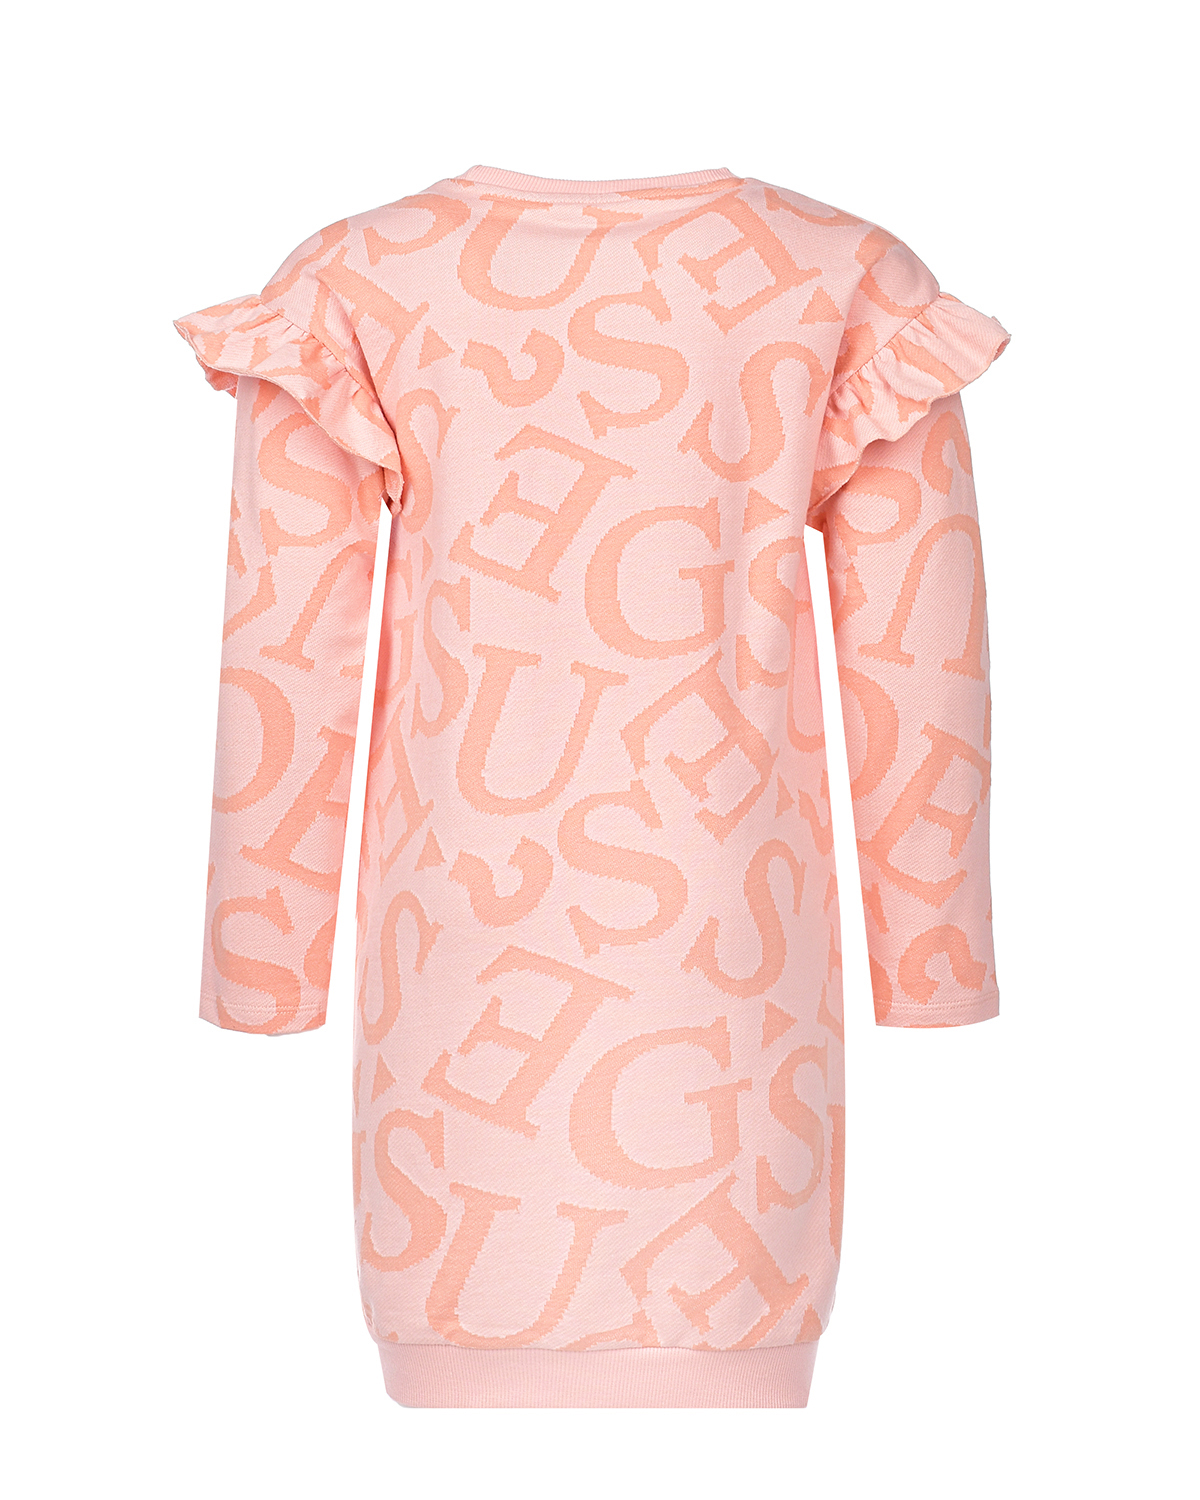 Платье со сплошным лого Guess детское, размер 122, цвет оранжевый - фото 2